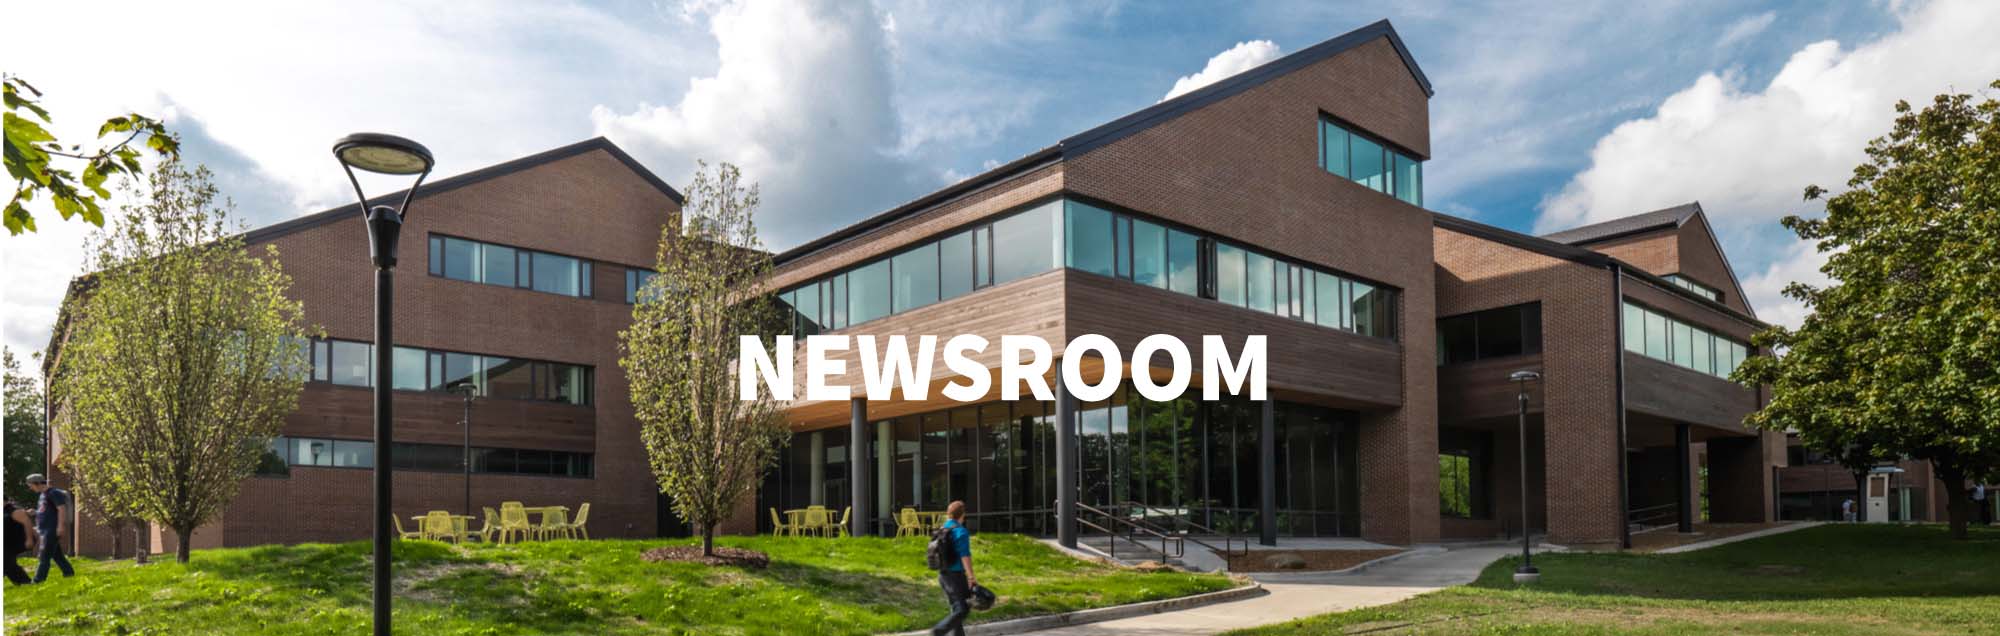 newsroom-exterior